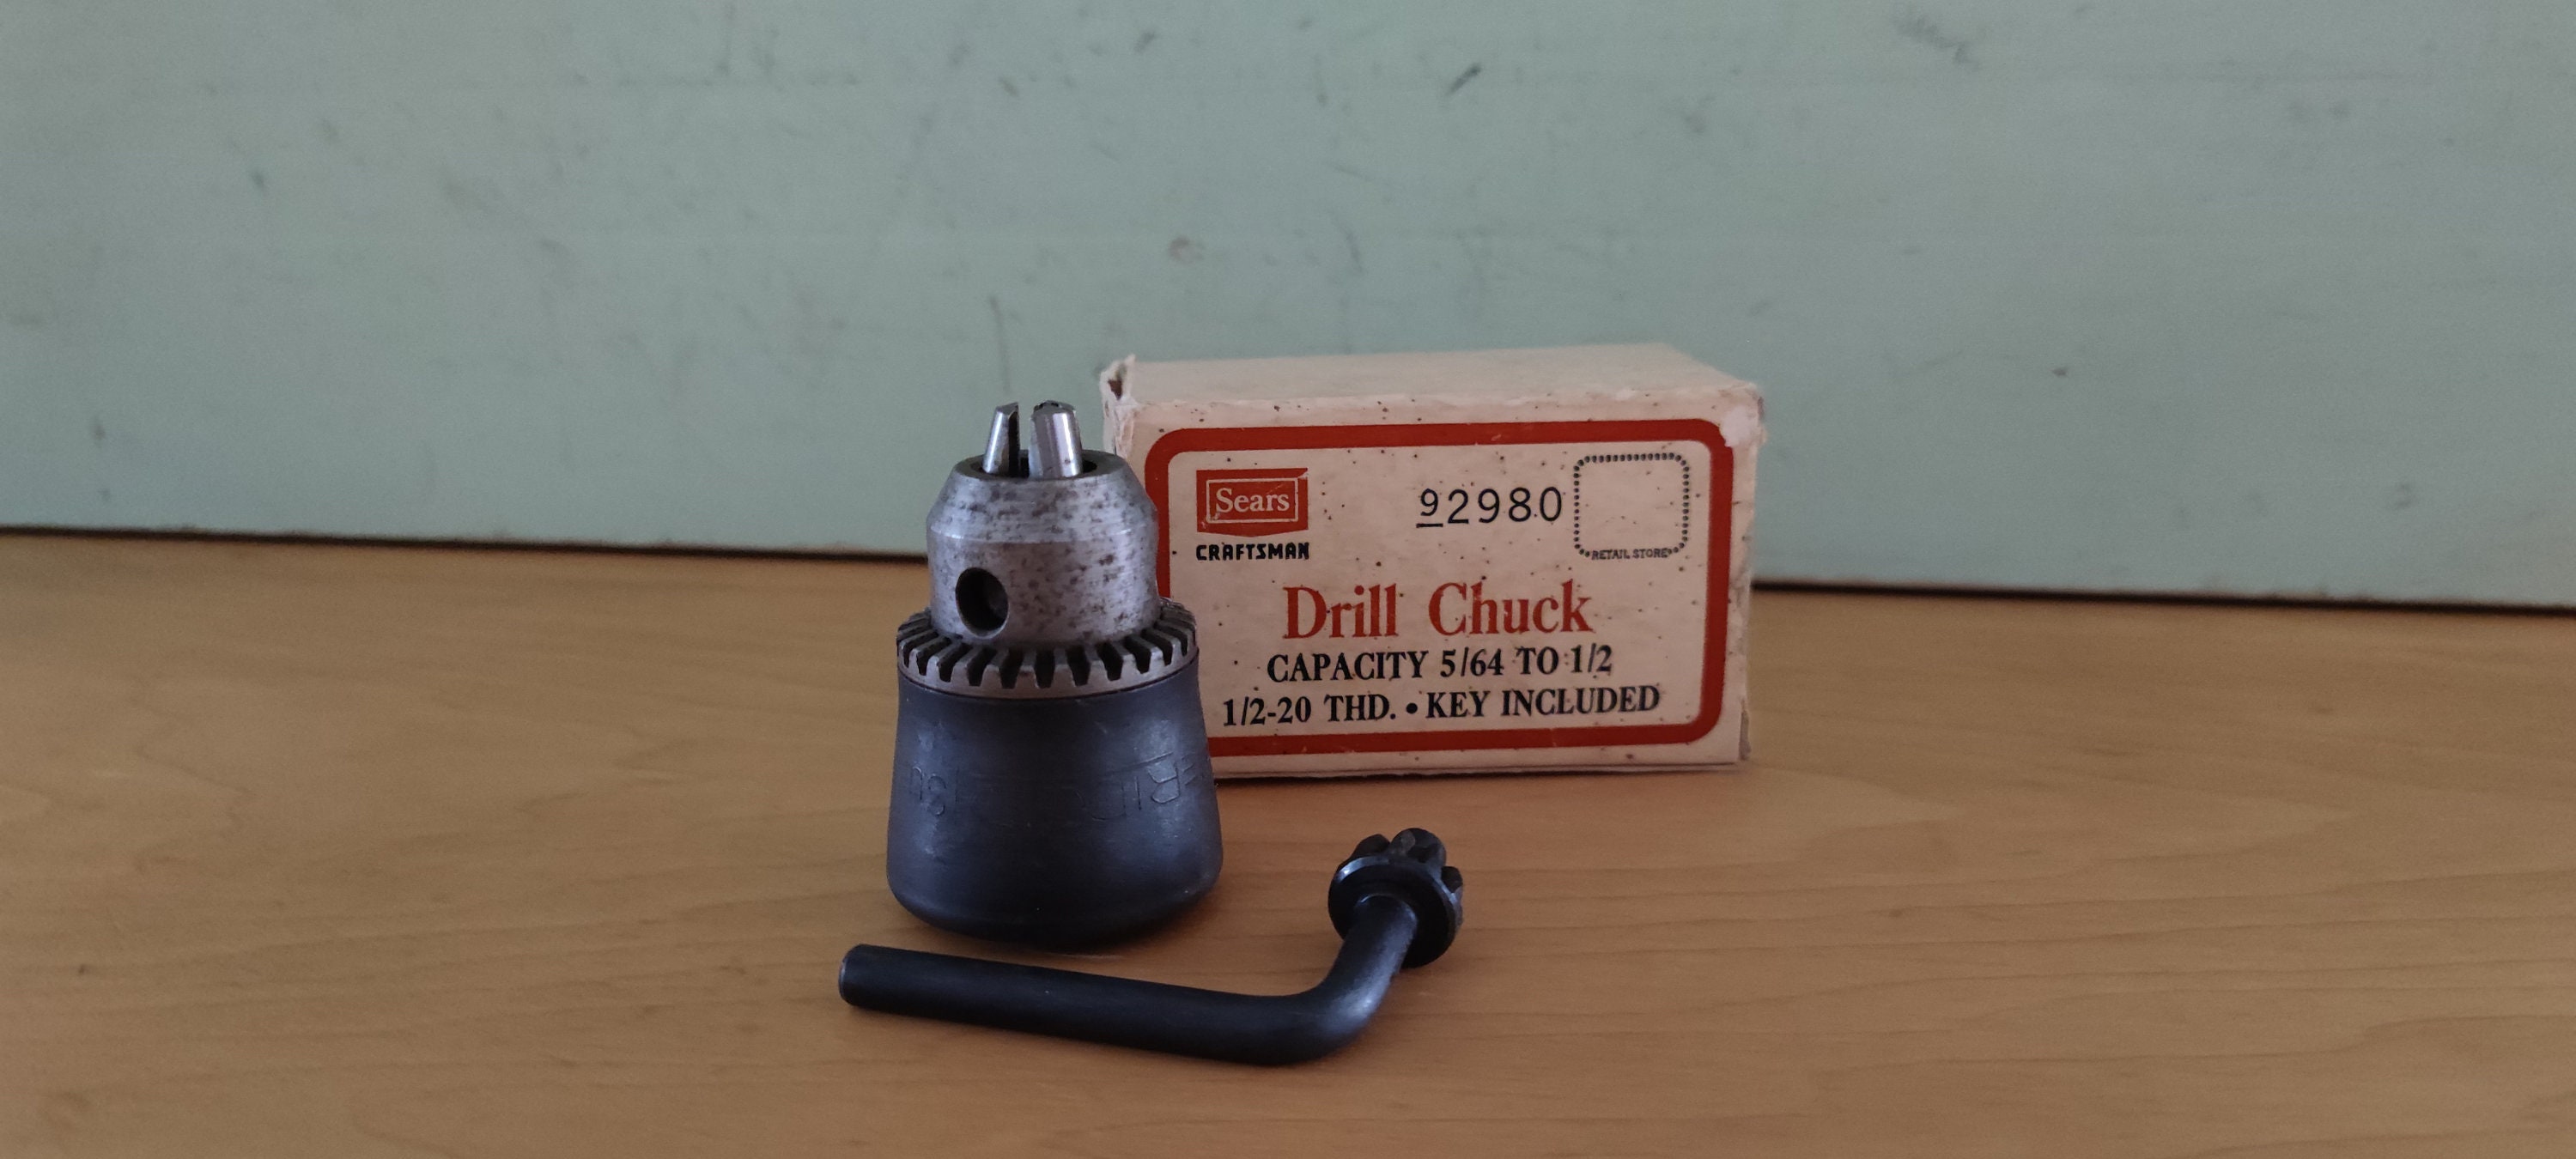 Hand Drill Manual Crank Drill +Chuck Key+5 Drill Bit For Plastic Wood  Jewelry GS